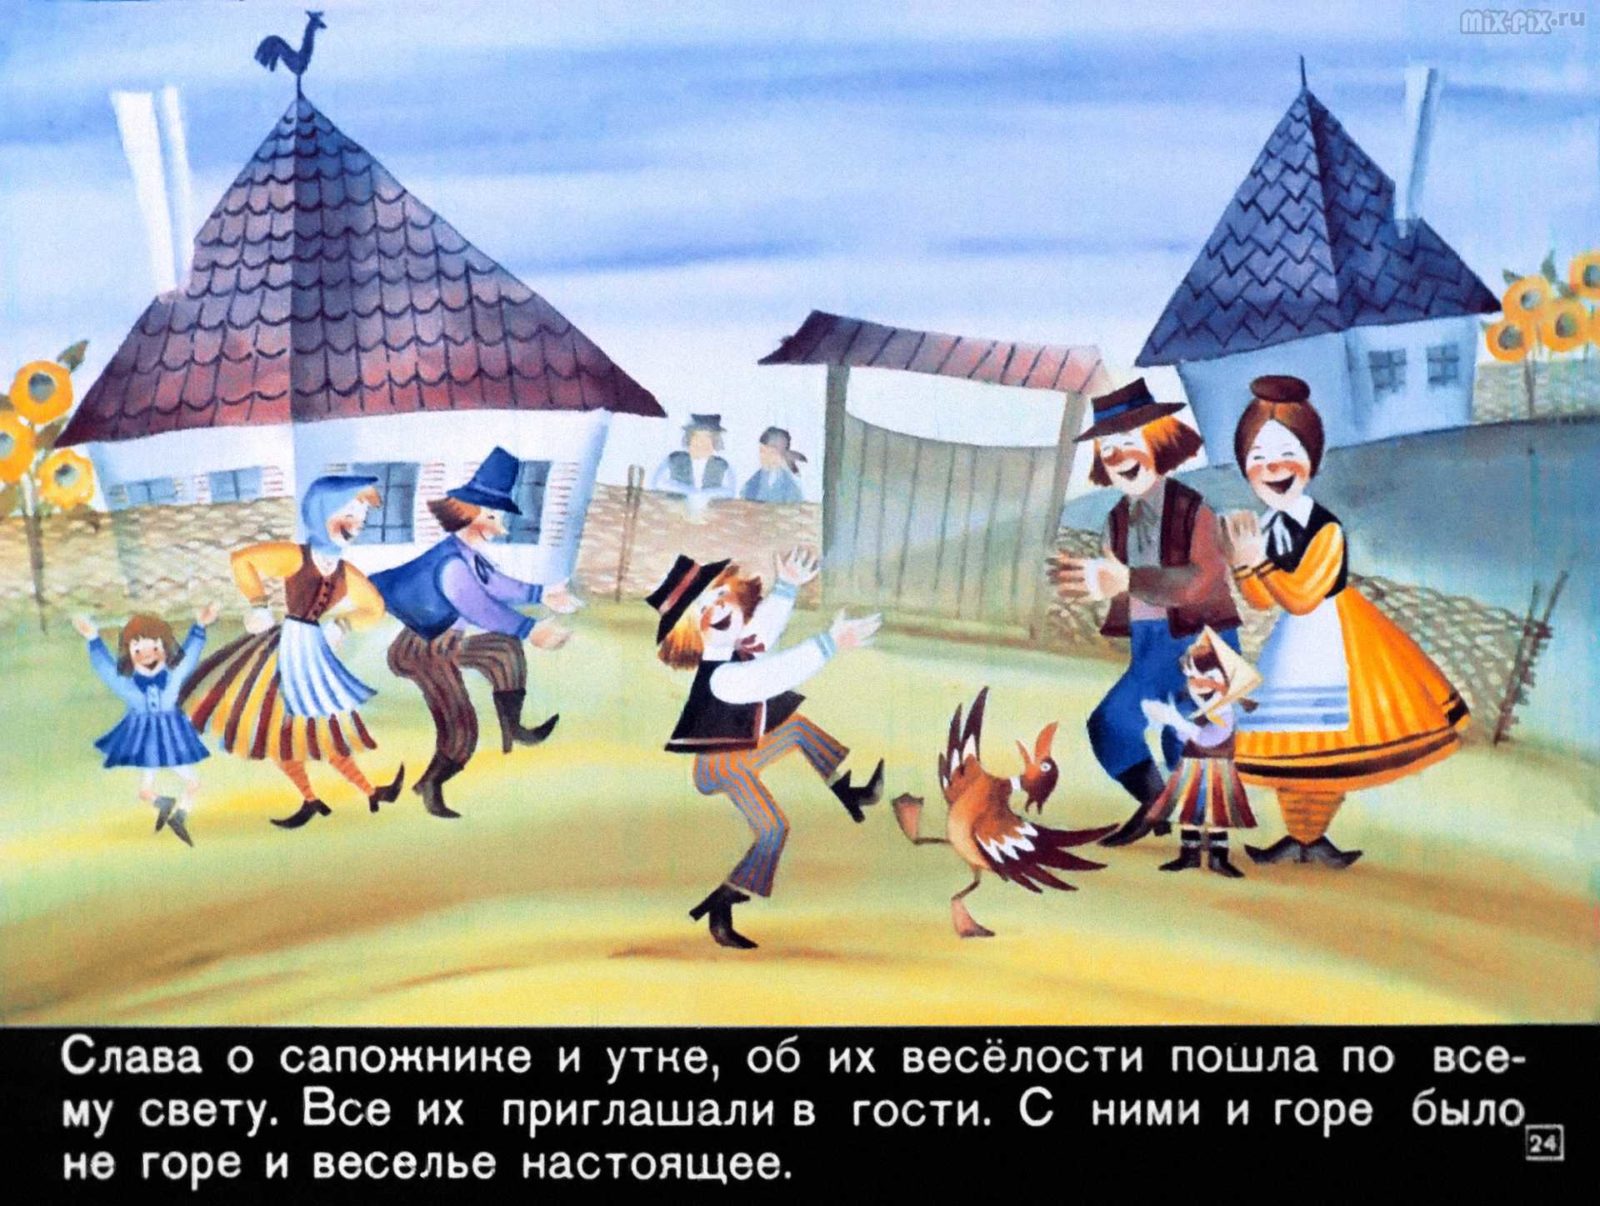 Сапожник Копытко и утка Кря (1972) 34